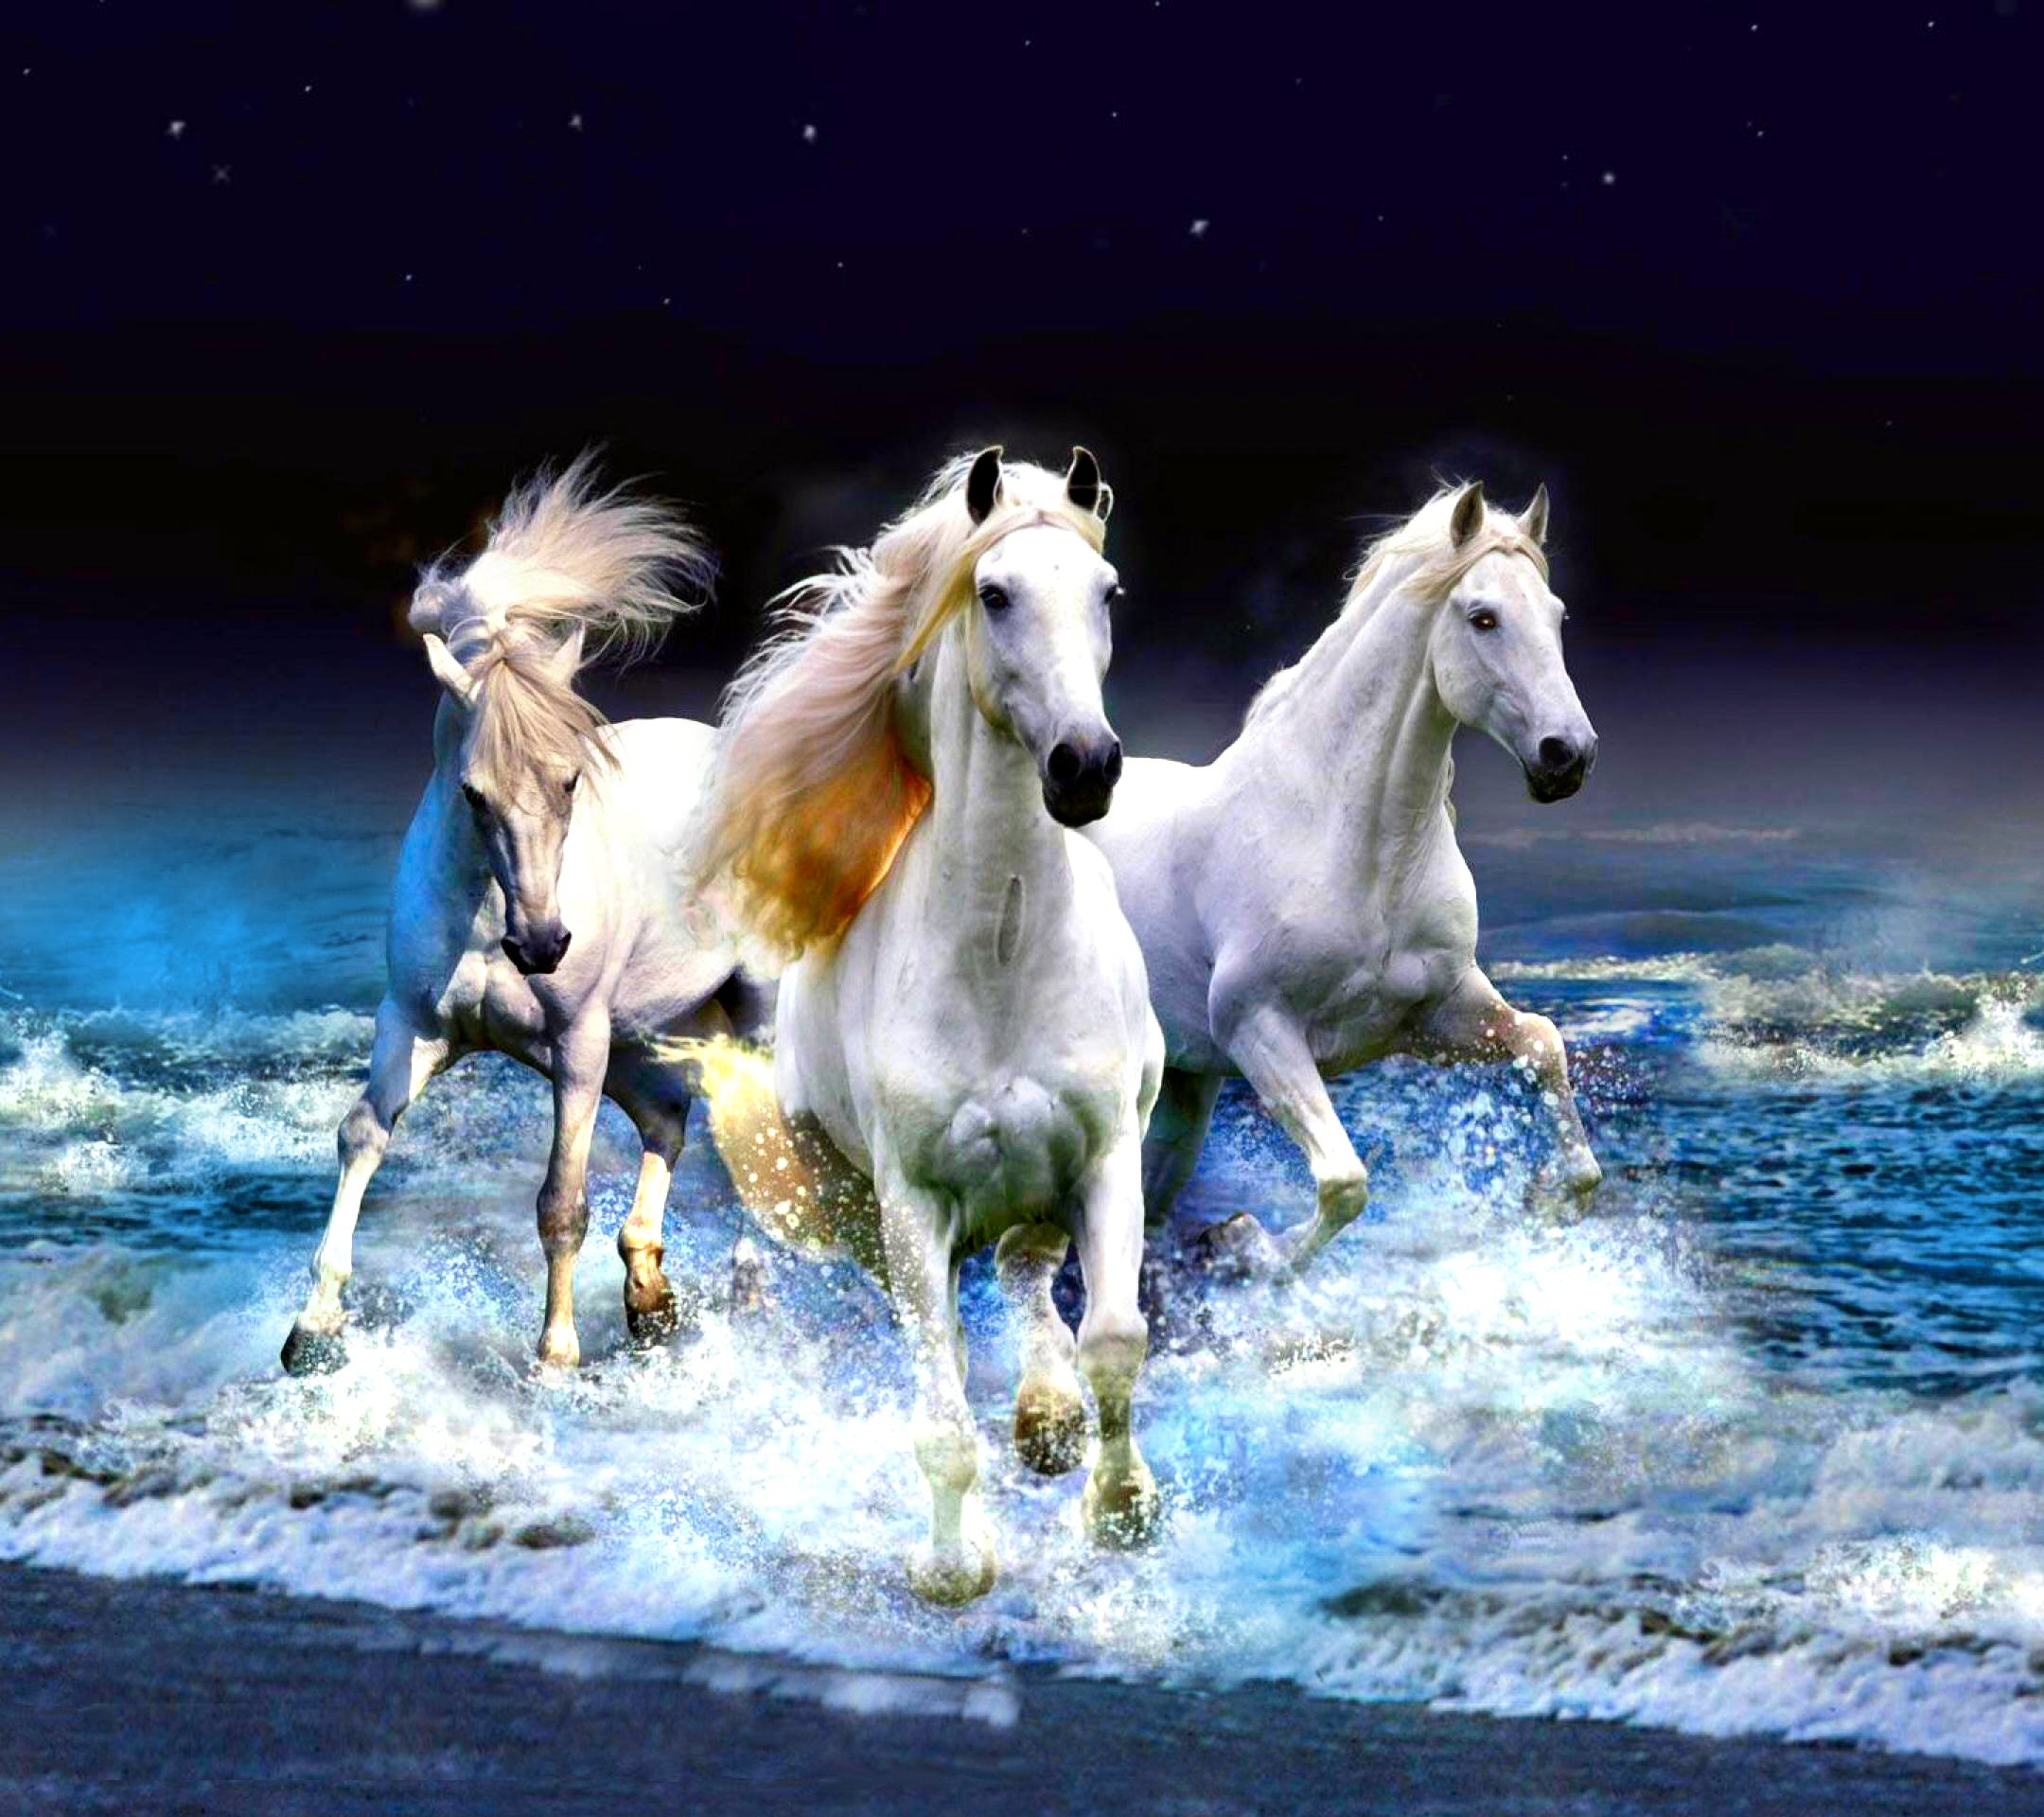 Скачать обои бесплатно Животные, Море, Пляж, Горизонт, Лошадь картинка на рабочий стол ПК